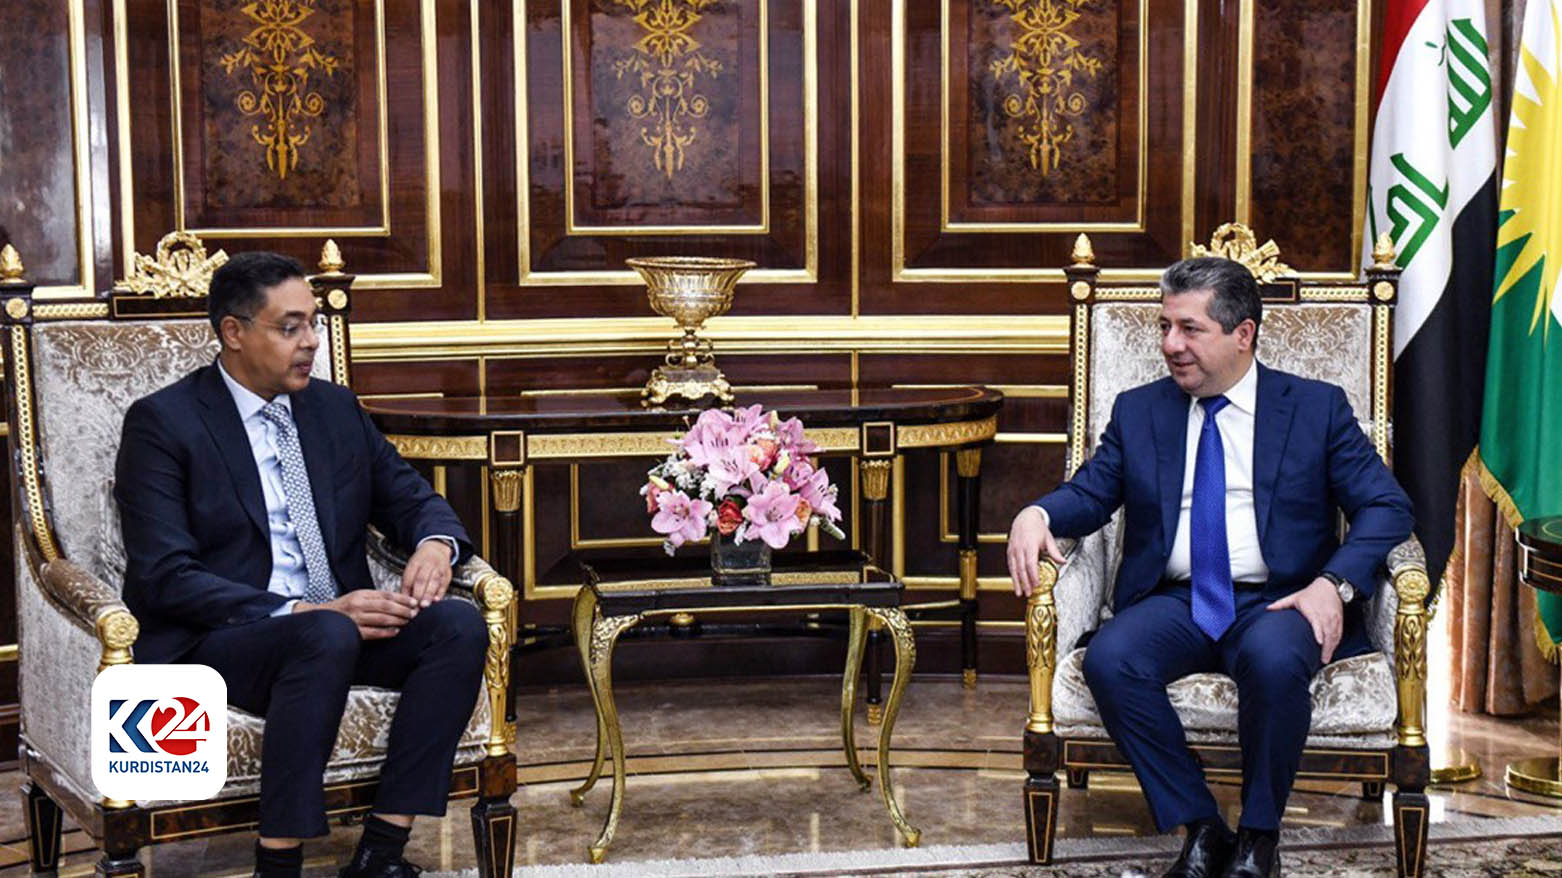 KRG PM Masrour Barzani (R) and Kuwait's Ambassador to Iraq, Tariq Abdullah al-Faraj (L). (Photo: KRG)